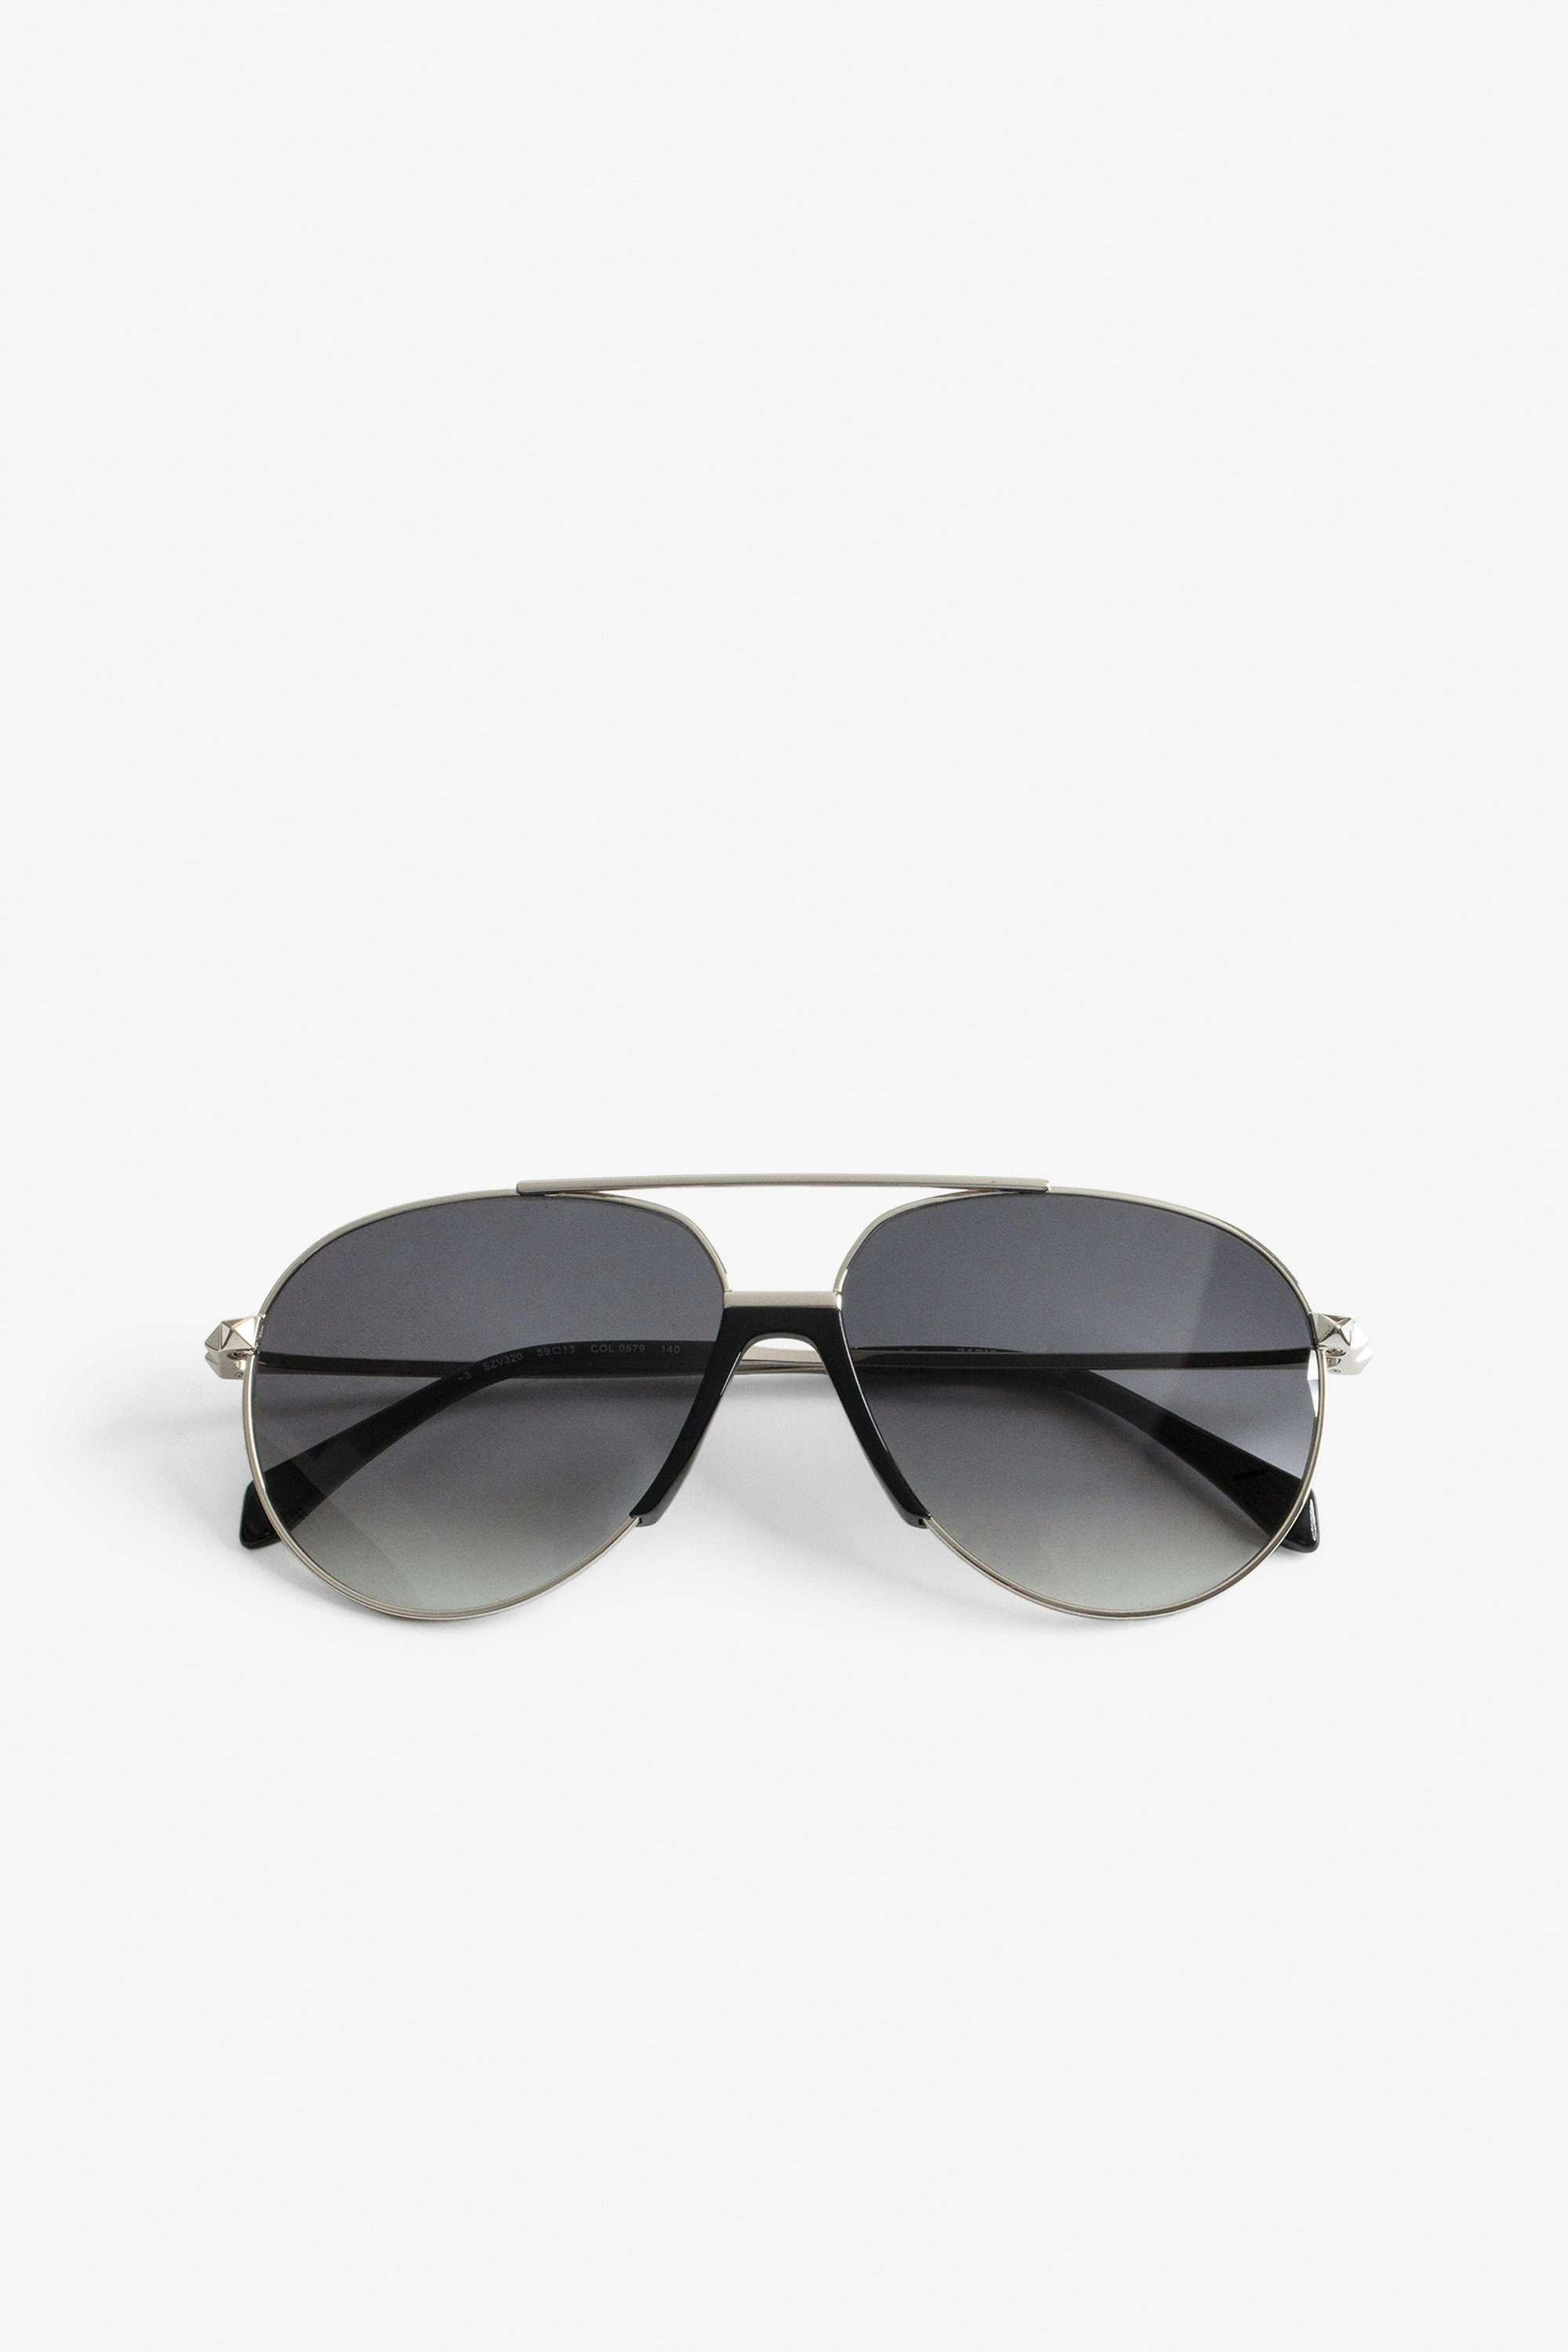 Sonnenbrille Studs Pyramide - Schwarze Sonnenbrille mit Rauchgläsern und pryamidenförmigen Nieten